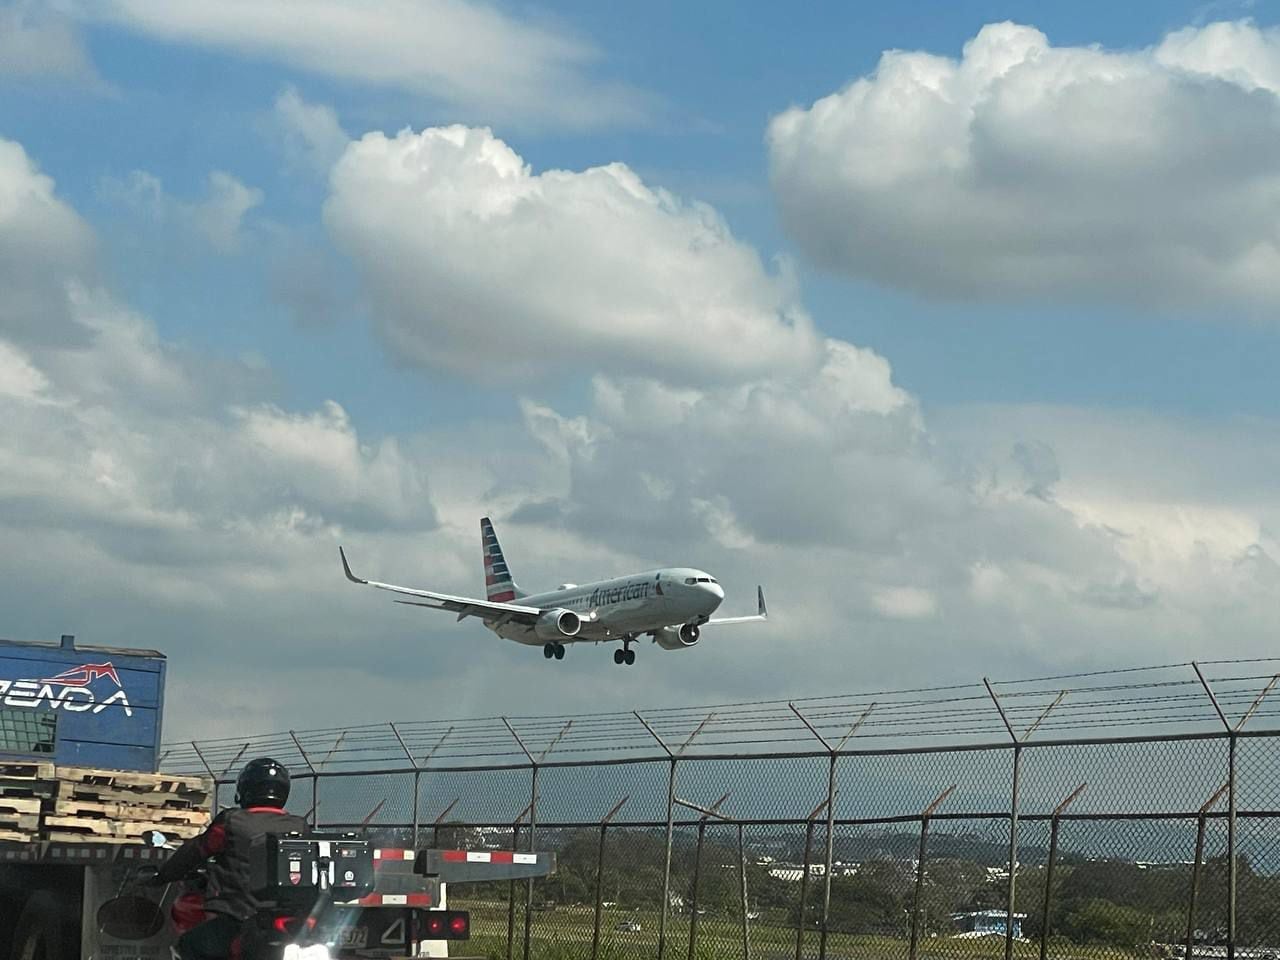 Tres vuelos fueron desviados hacia aeropuertos alternos, mientras que dos fueron cancelados y reprogramados. Foto con fines ilustrativos.